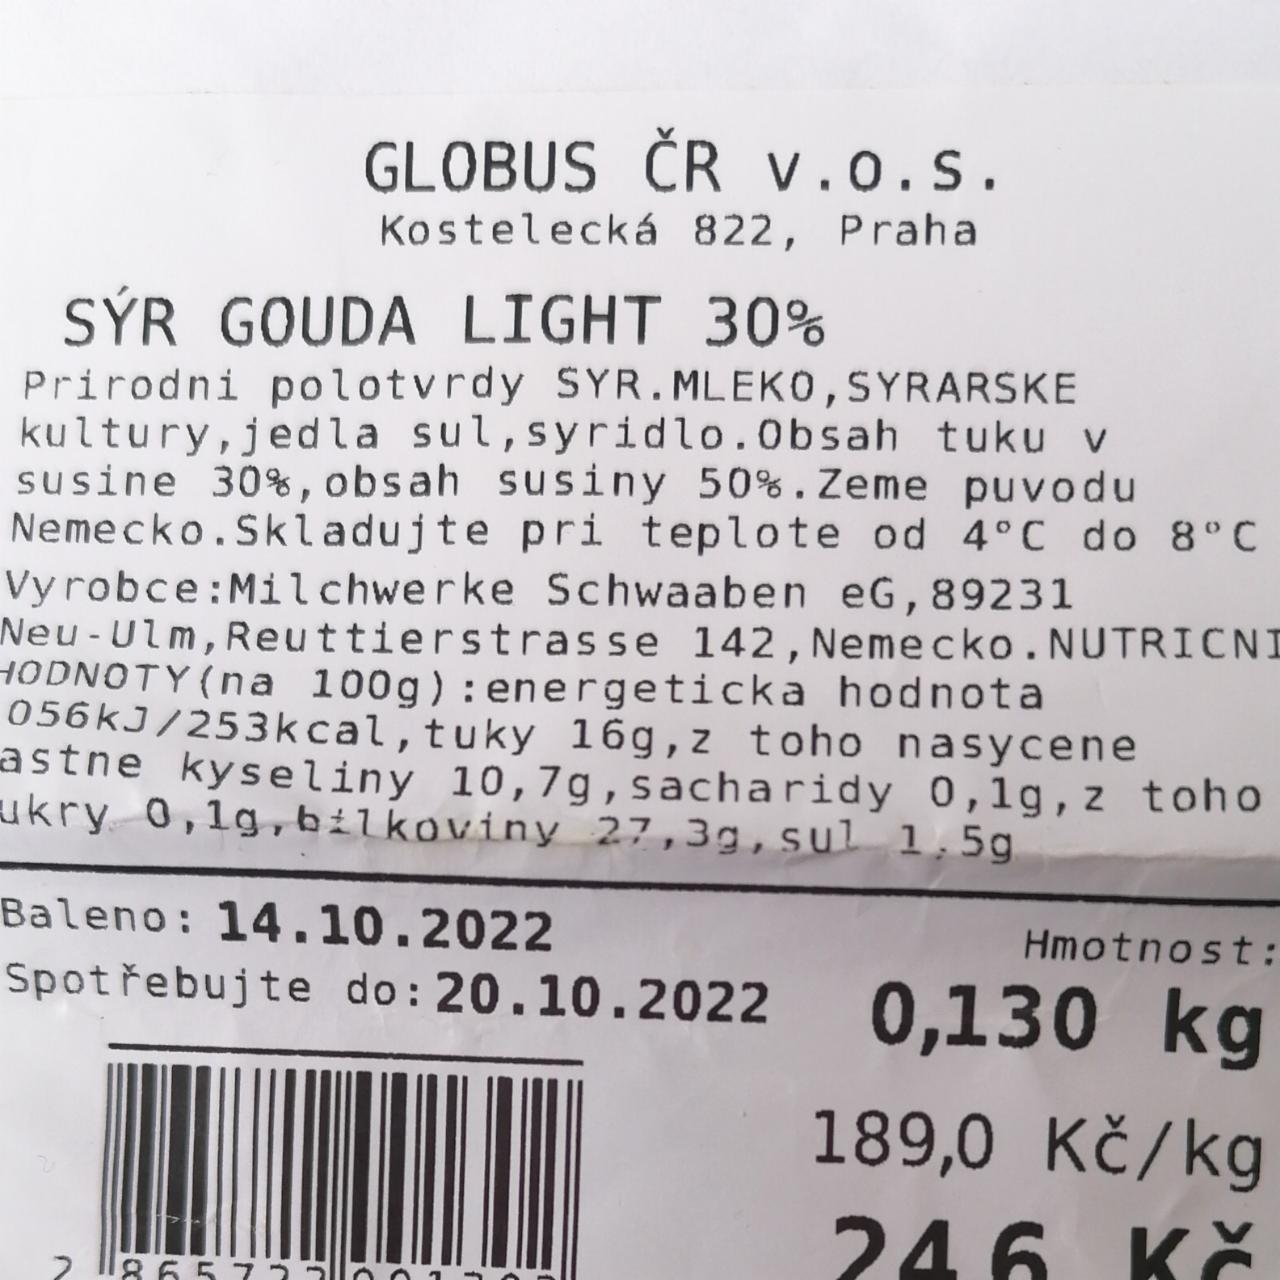 Fotografie - Gouda Light 30% Globus